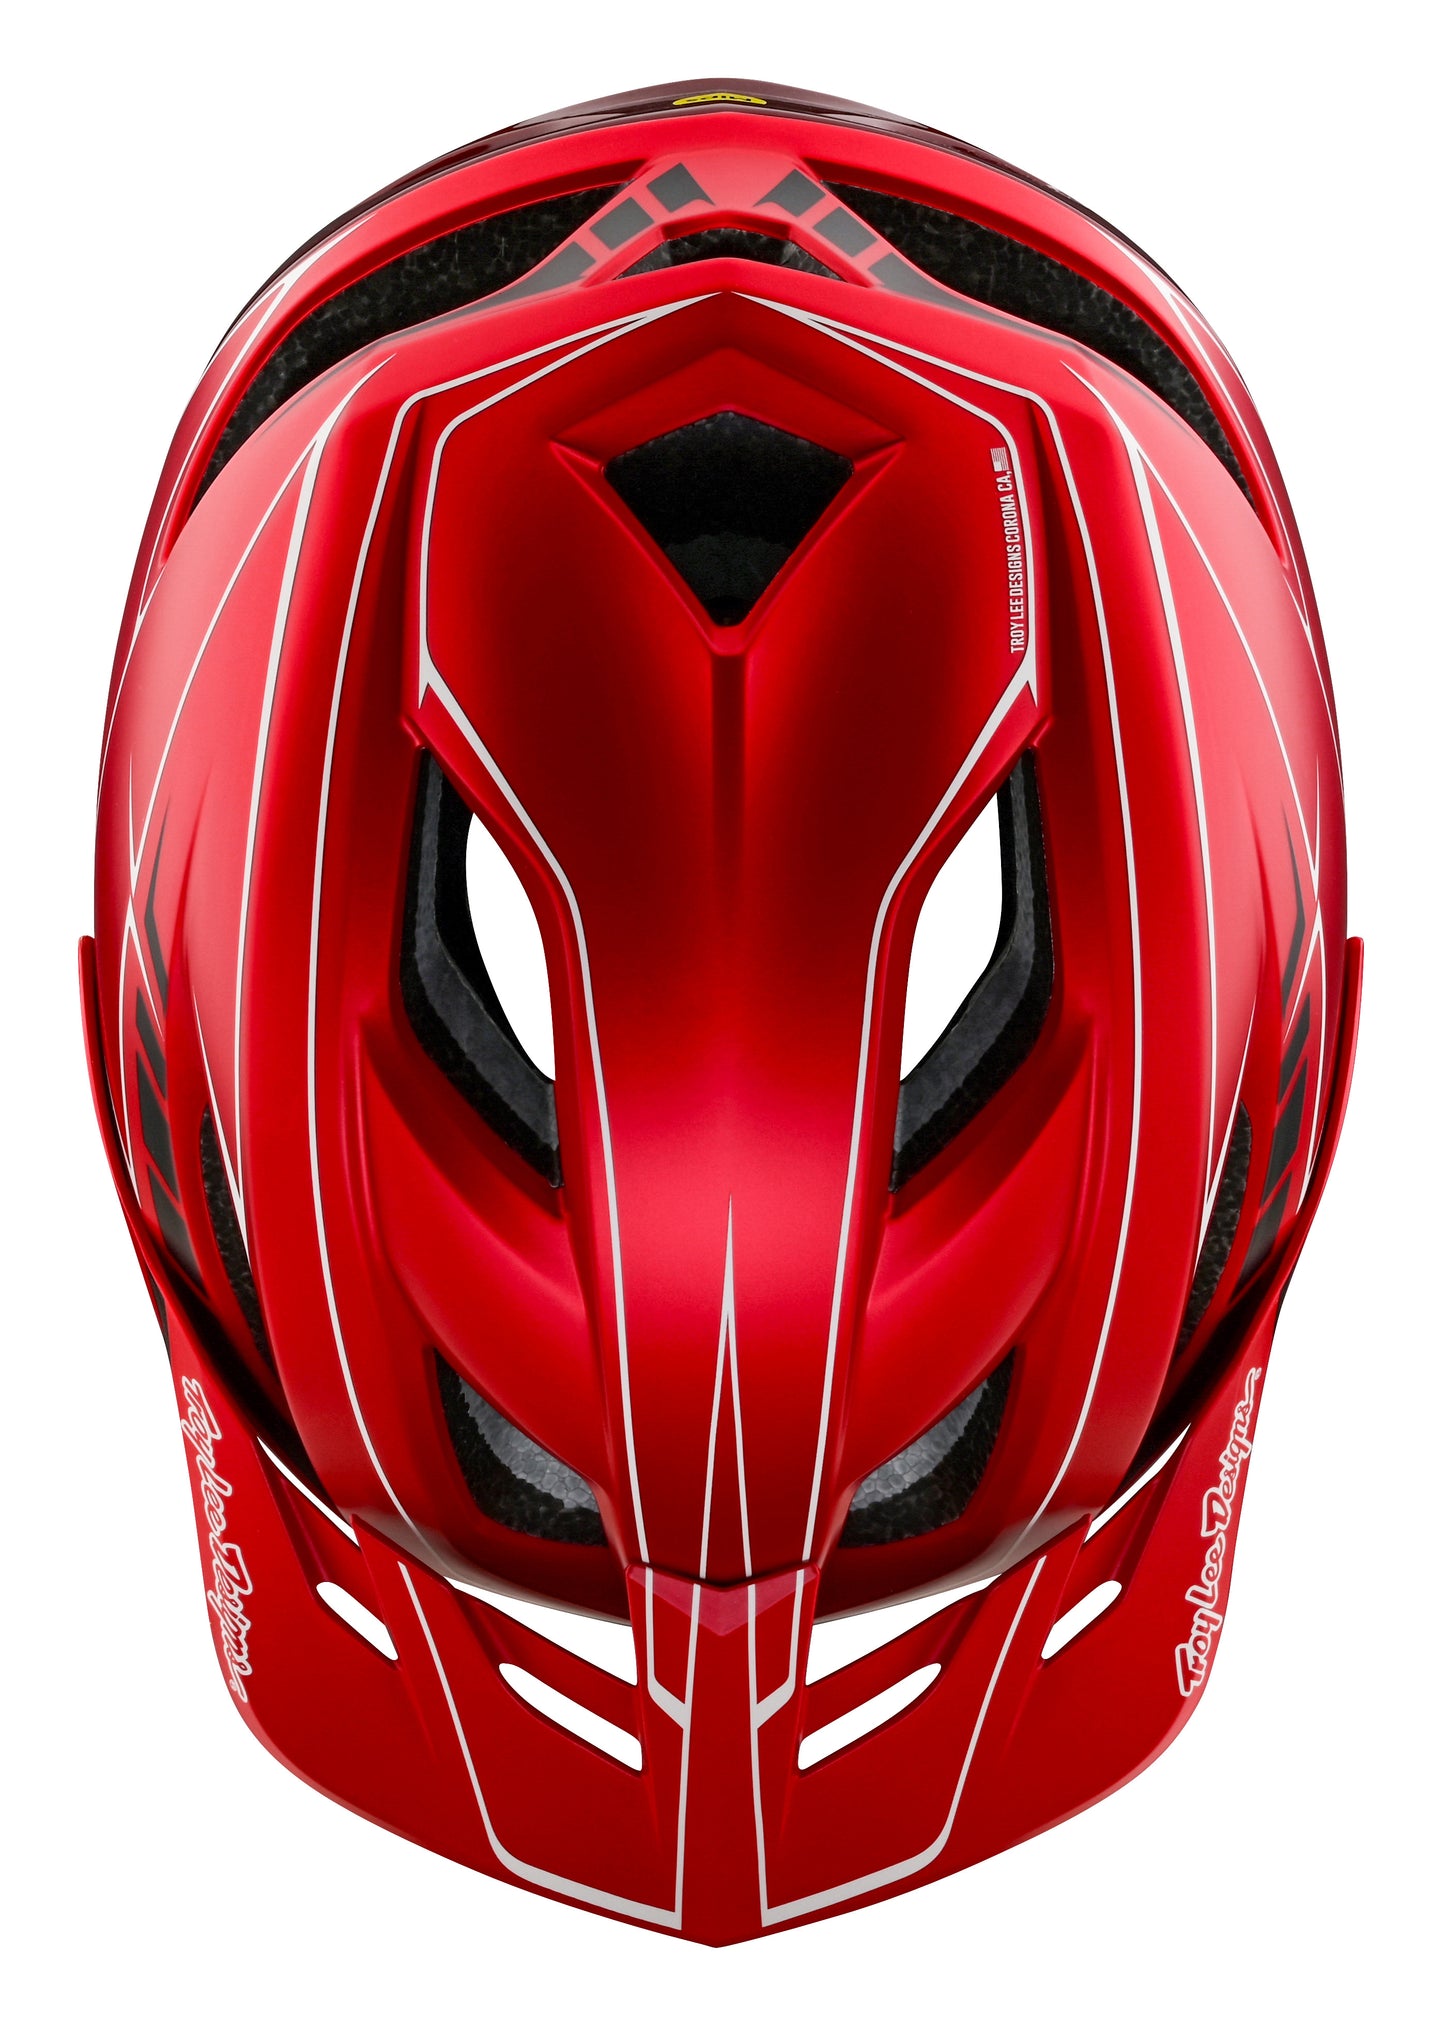 Troy Lee Designs Flowline SE MTB Helmet - Badge - Pinstripe - Red